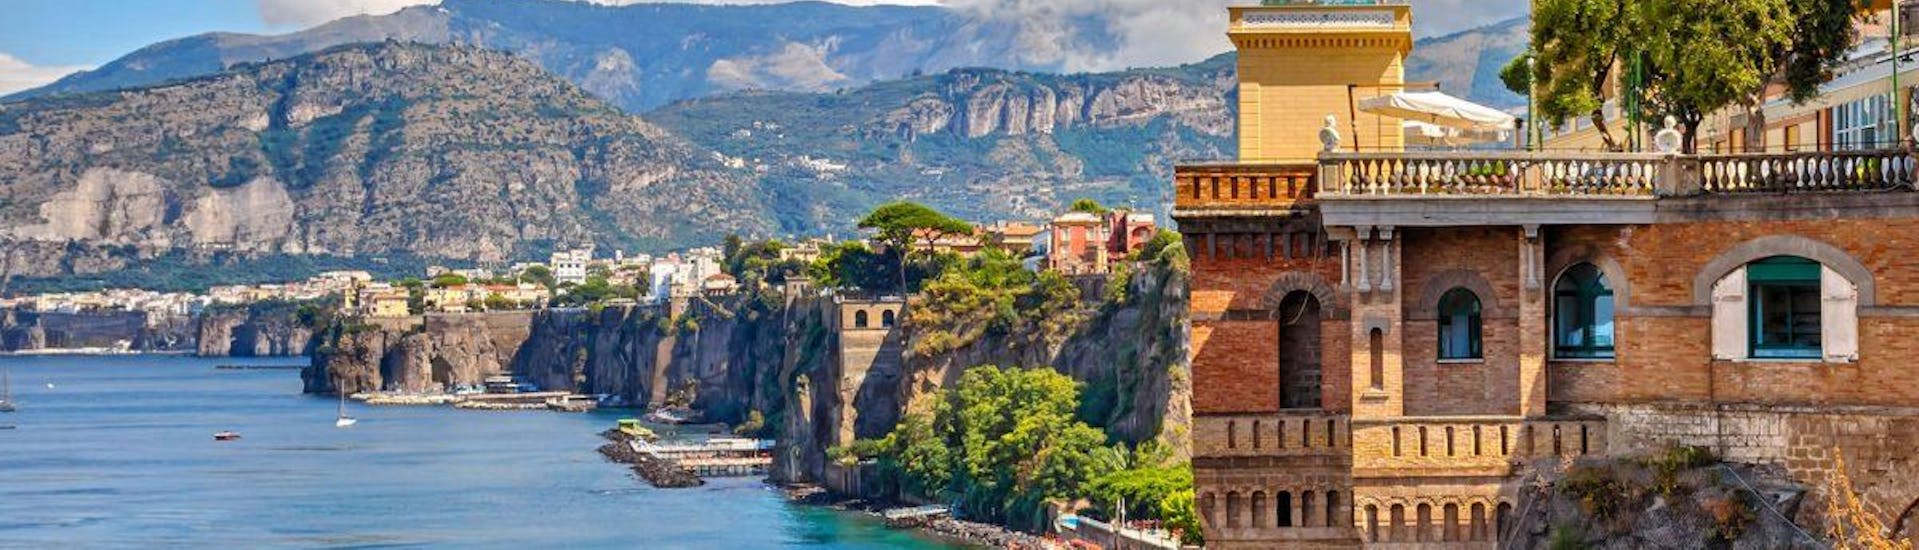 Amalfi è uno dei punti salienti che i partecipanti possono ammirare durante il viaggio in barca da Napoli a Positano e Amalfi.